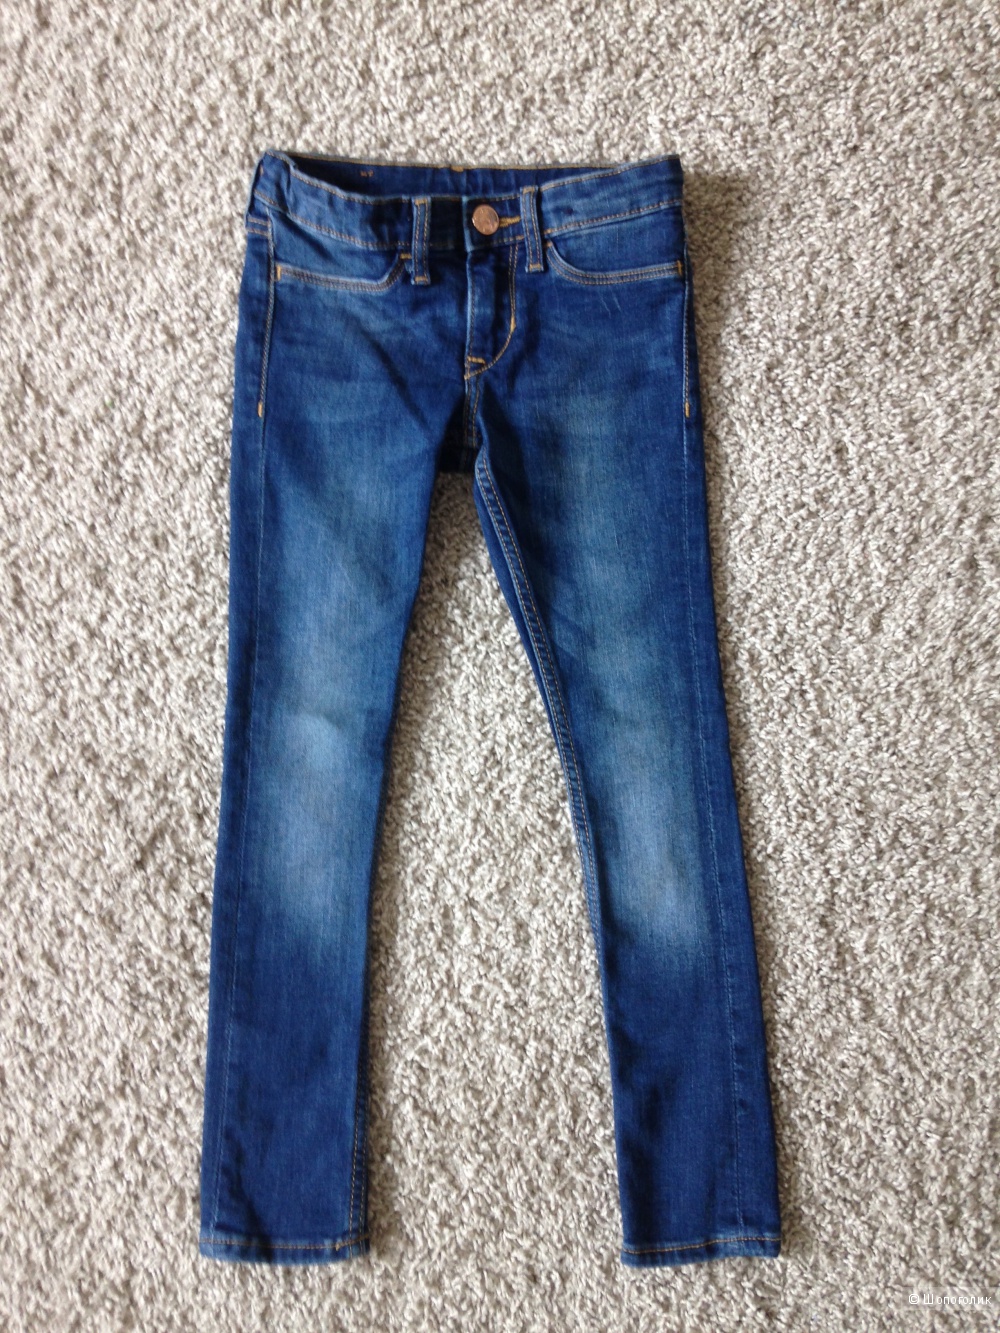 Новые джинсы H&M 110р для девочки